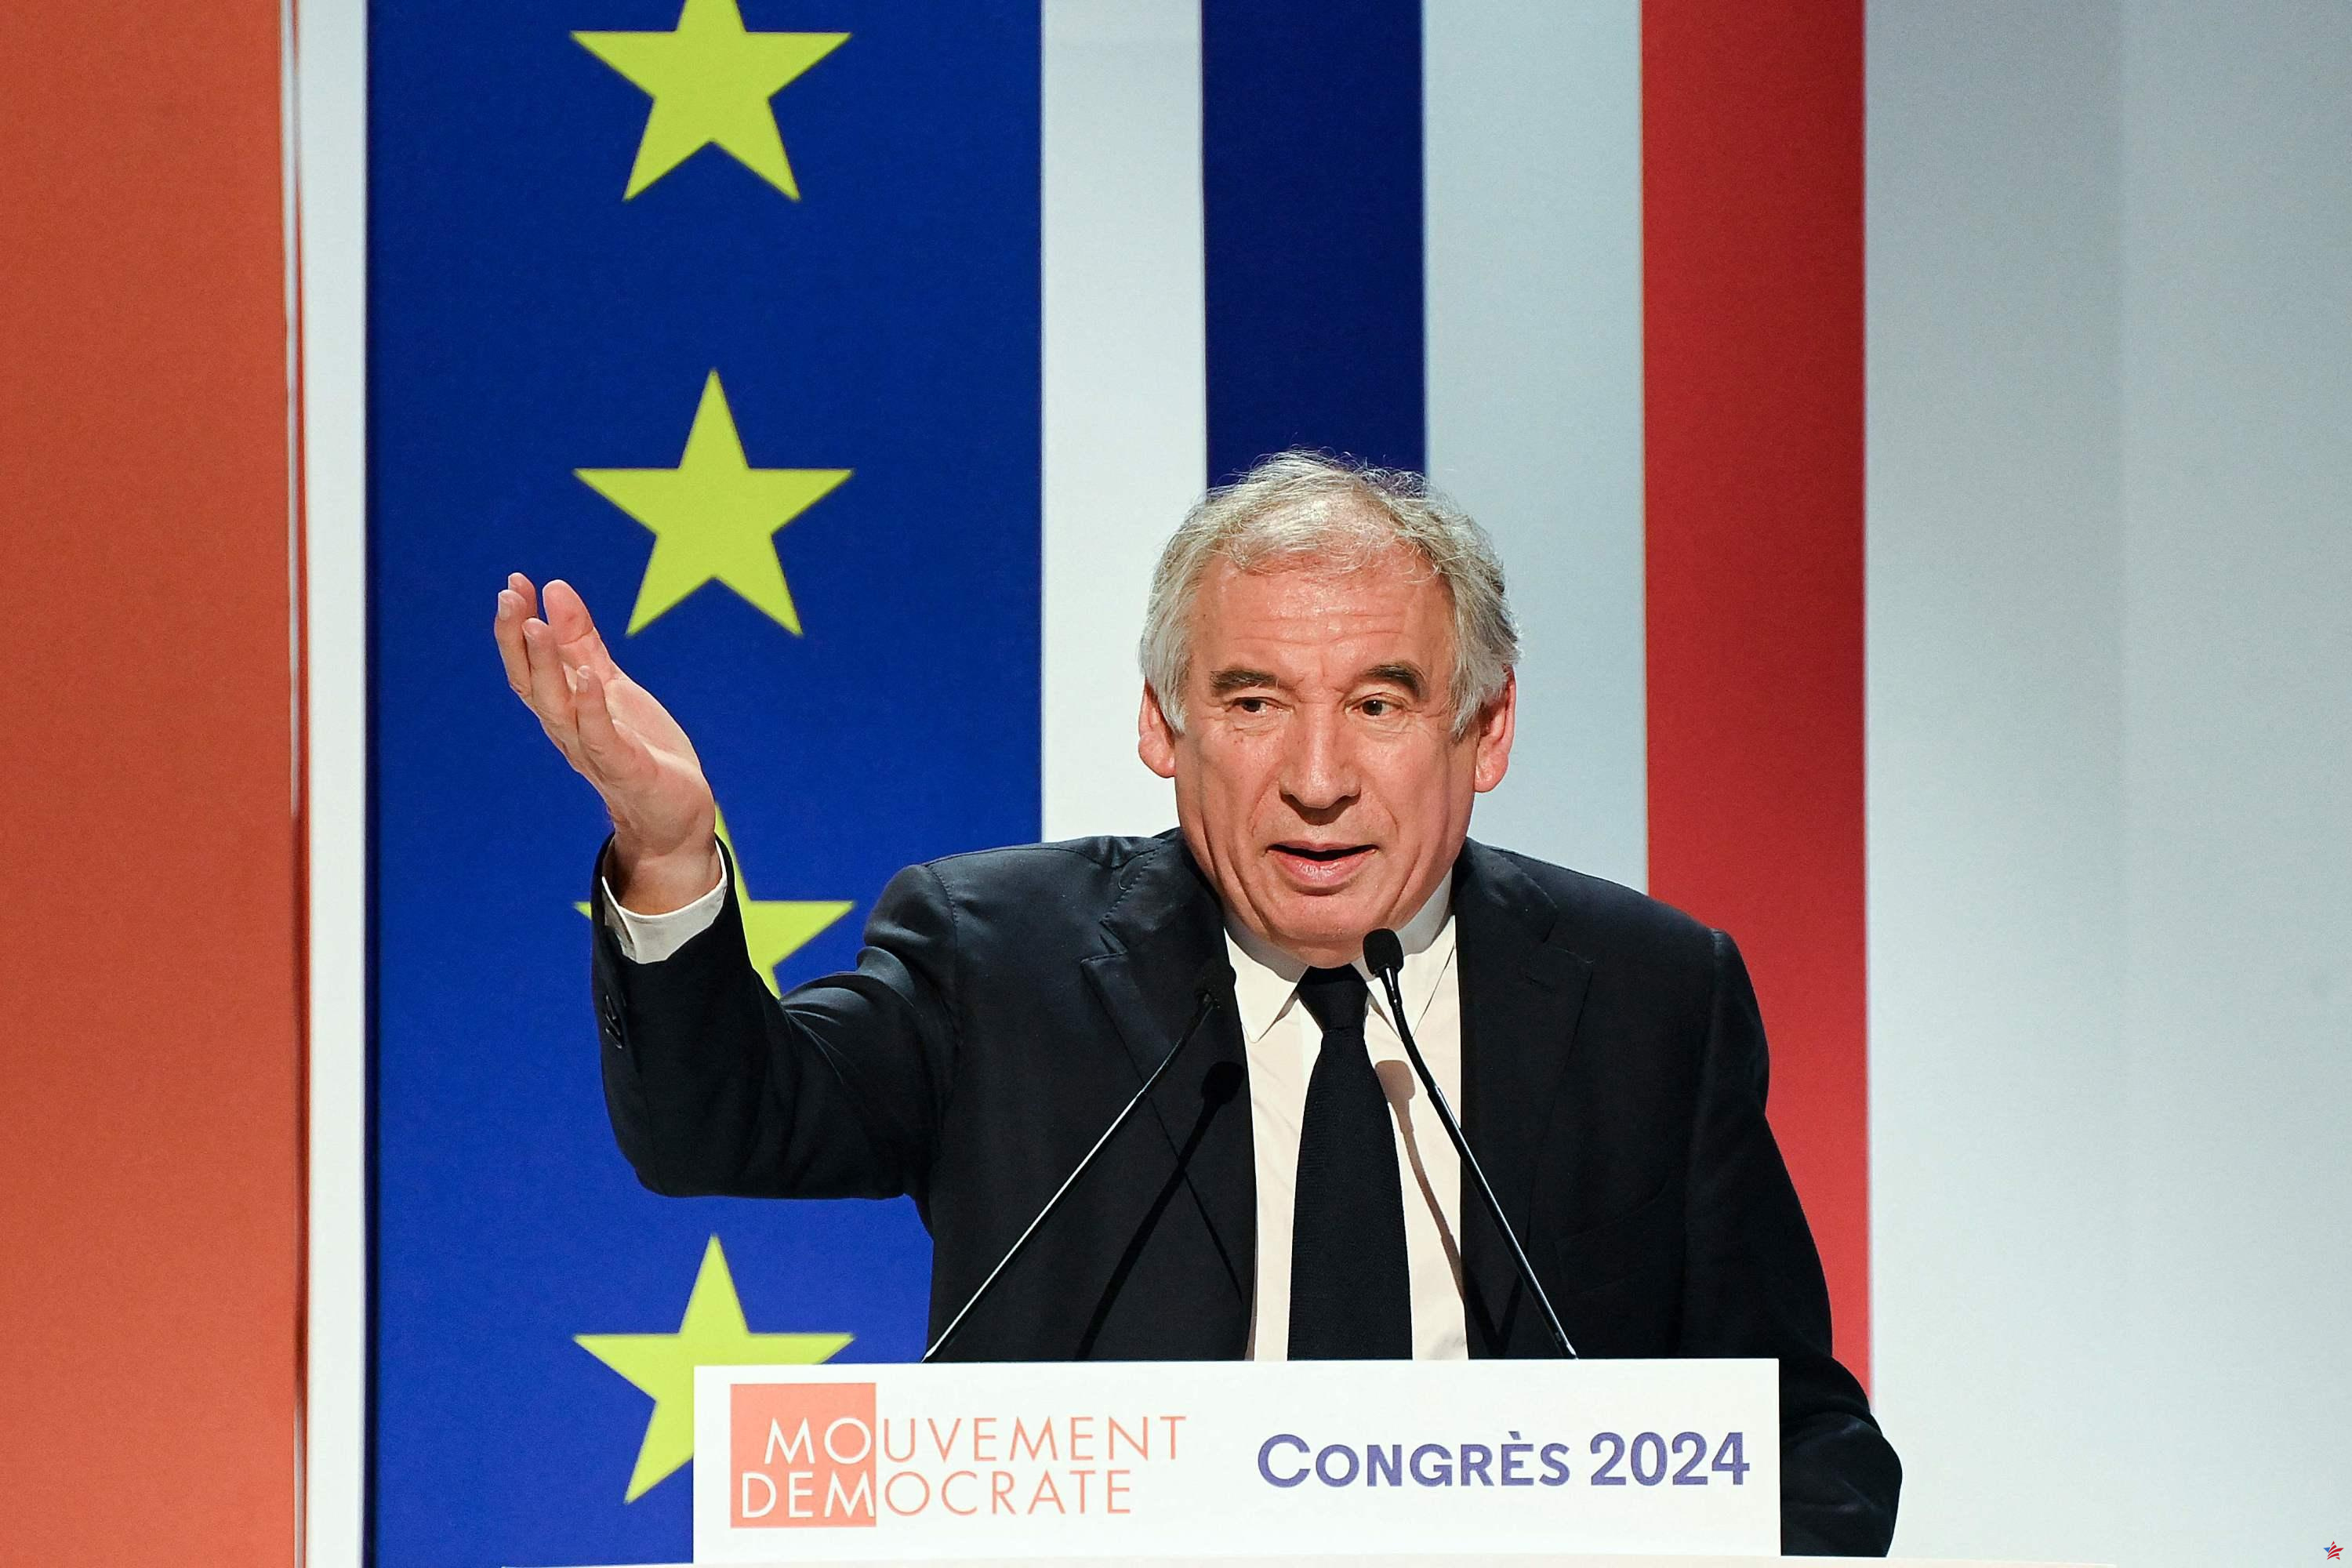 En Blois, François Bayrou quiere abrir “una nueva página” de política económica